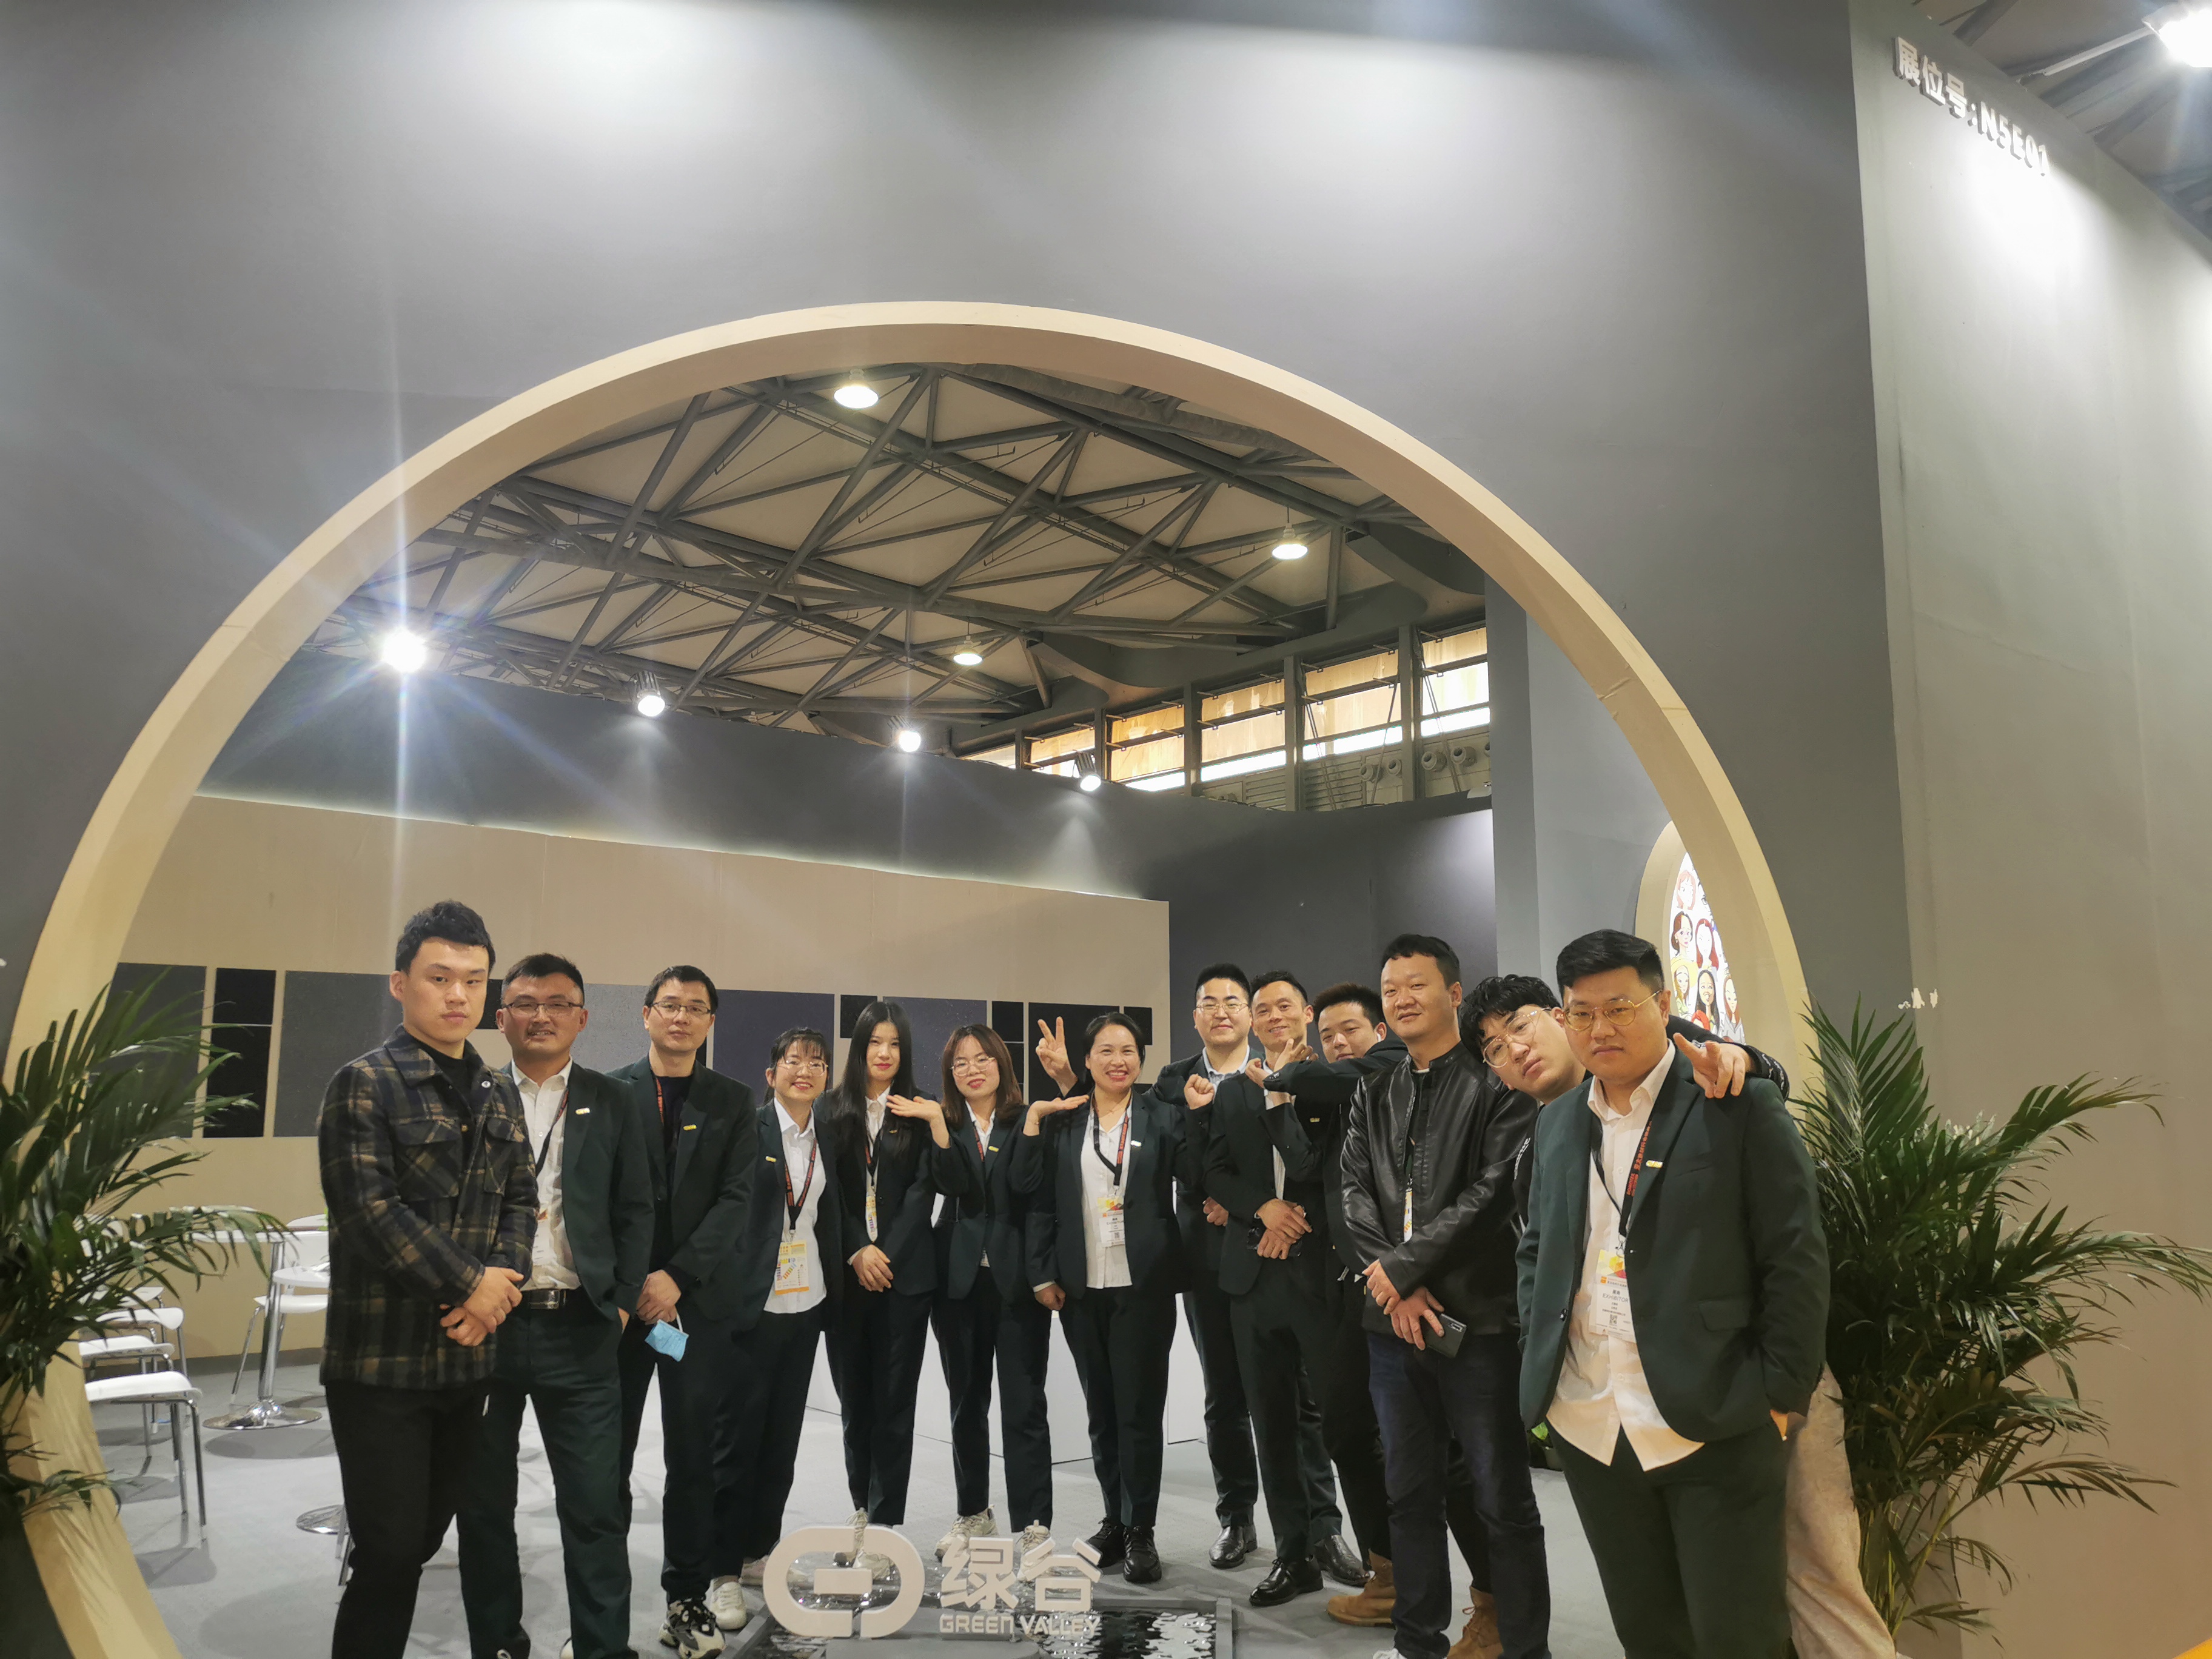 EXPOSIÇÃO | Shanghai DOMOTEX Flooring Exhibition, Green Valley fez uma estreia impressionante com os mais recentes produtos